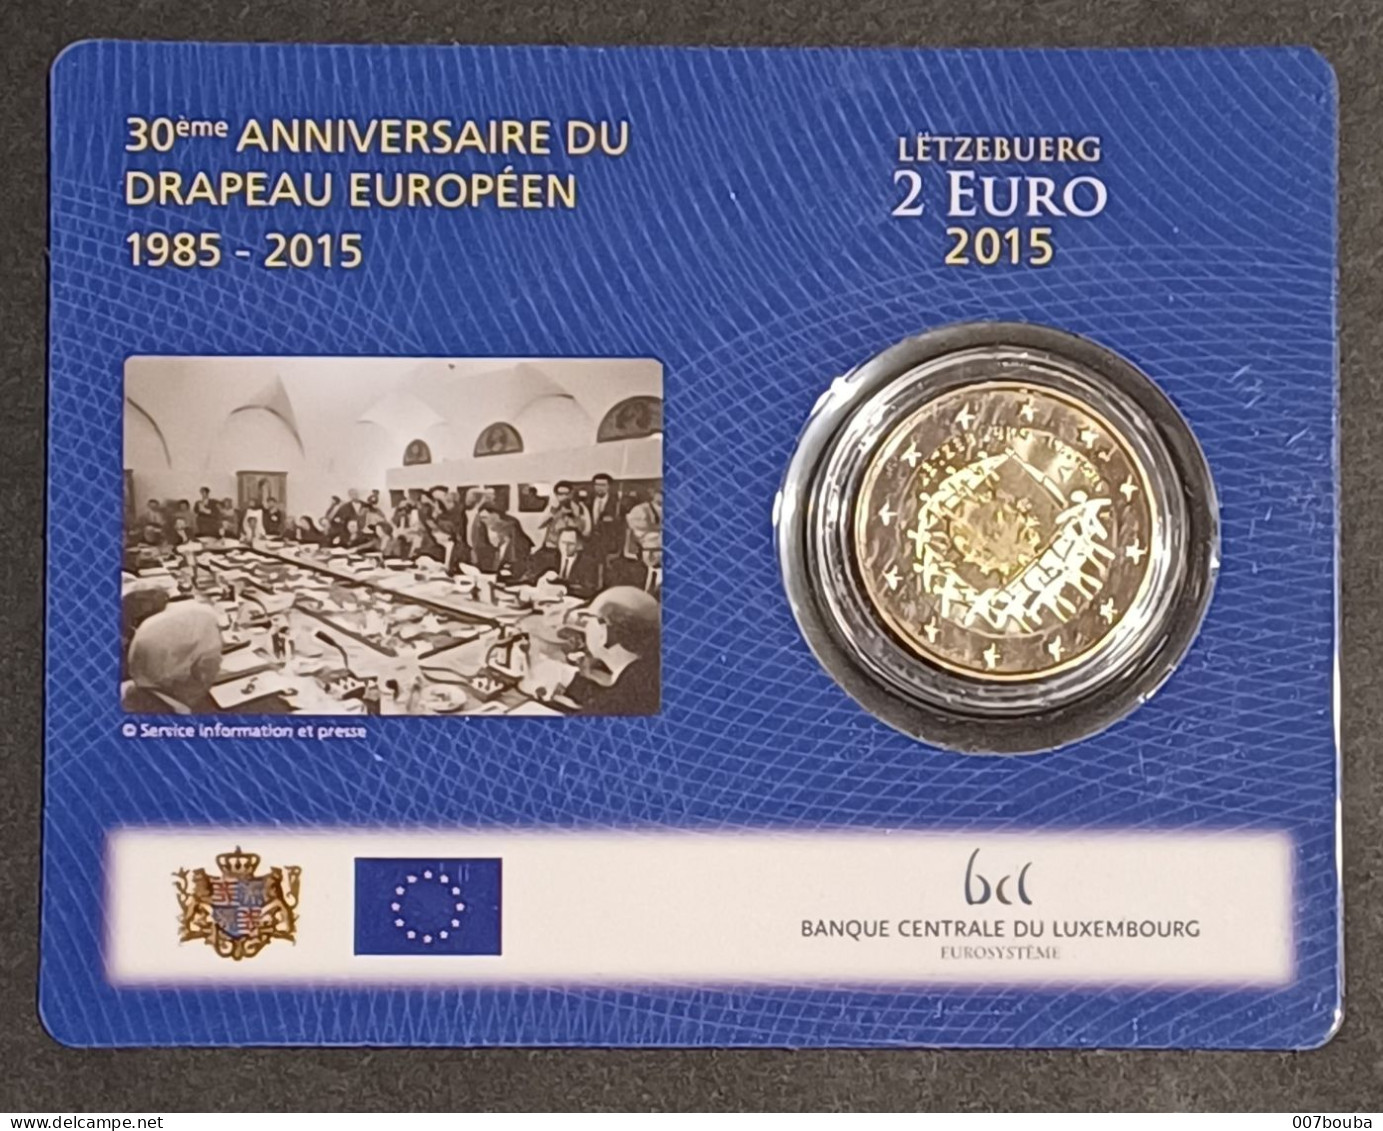 LUXEMBOURG / 2€  2015 / COINCARD _ 30e ANNIVERSAIRE DU DRAPEAU EUROPÉEN  / NEUVE SOUS BLISTER - Luxembourg